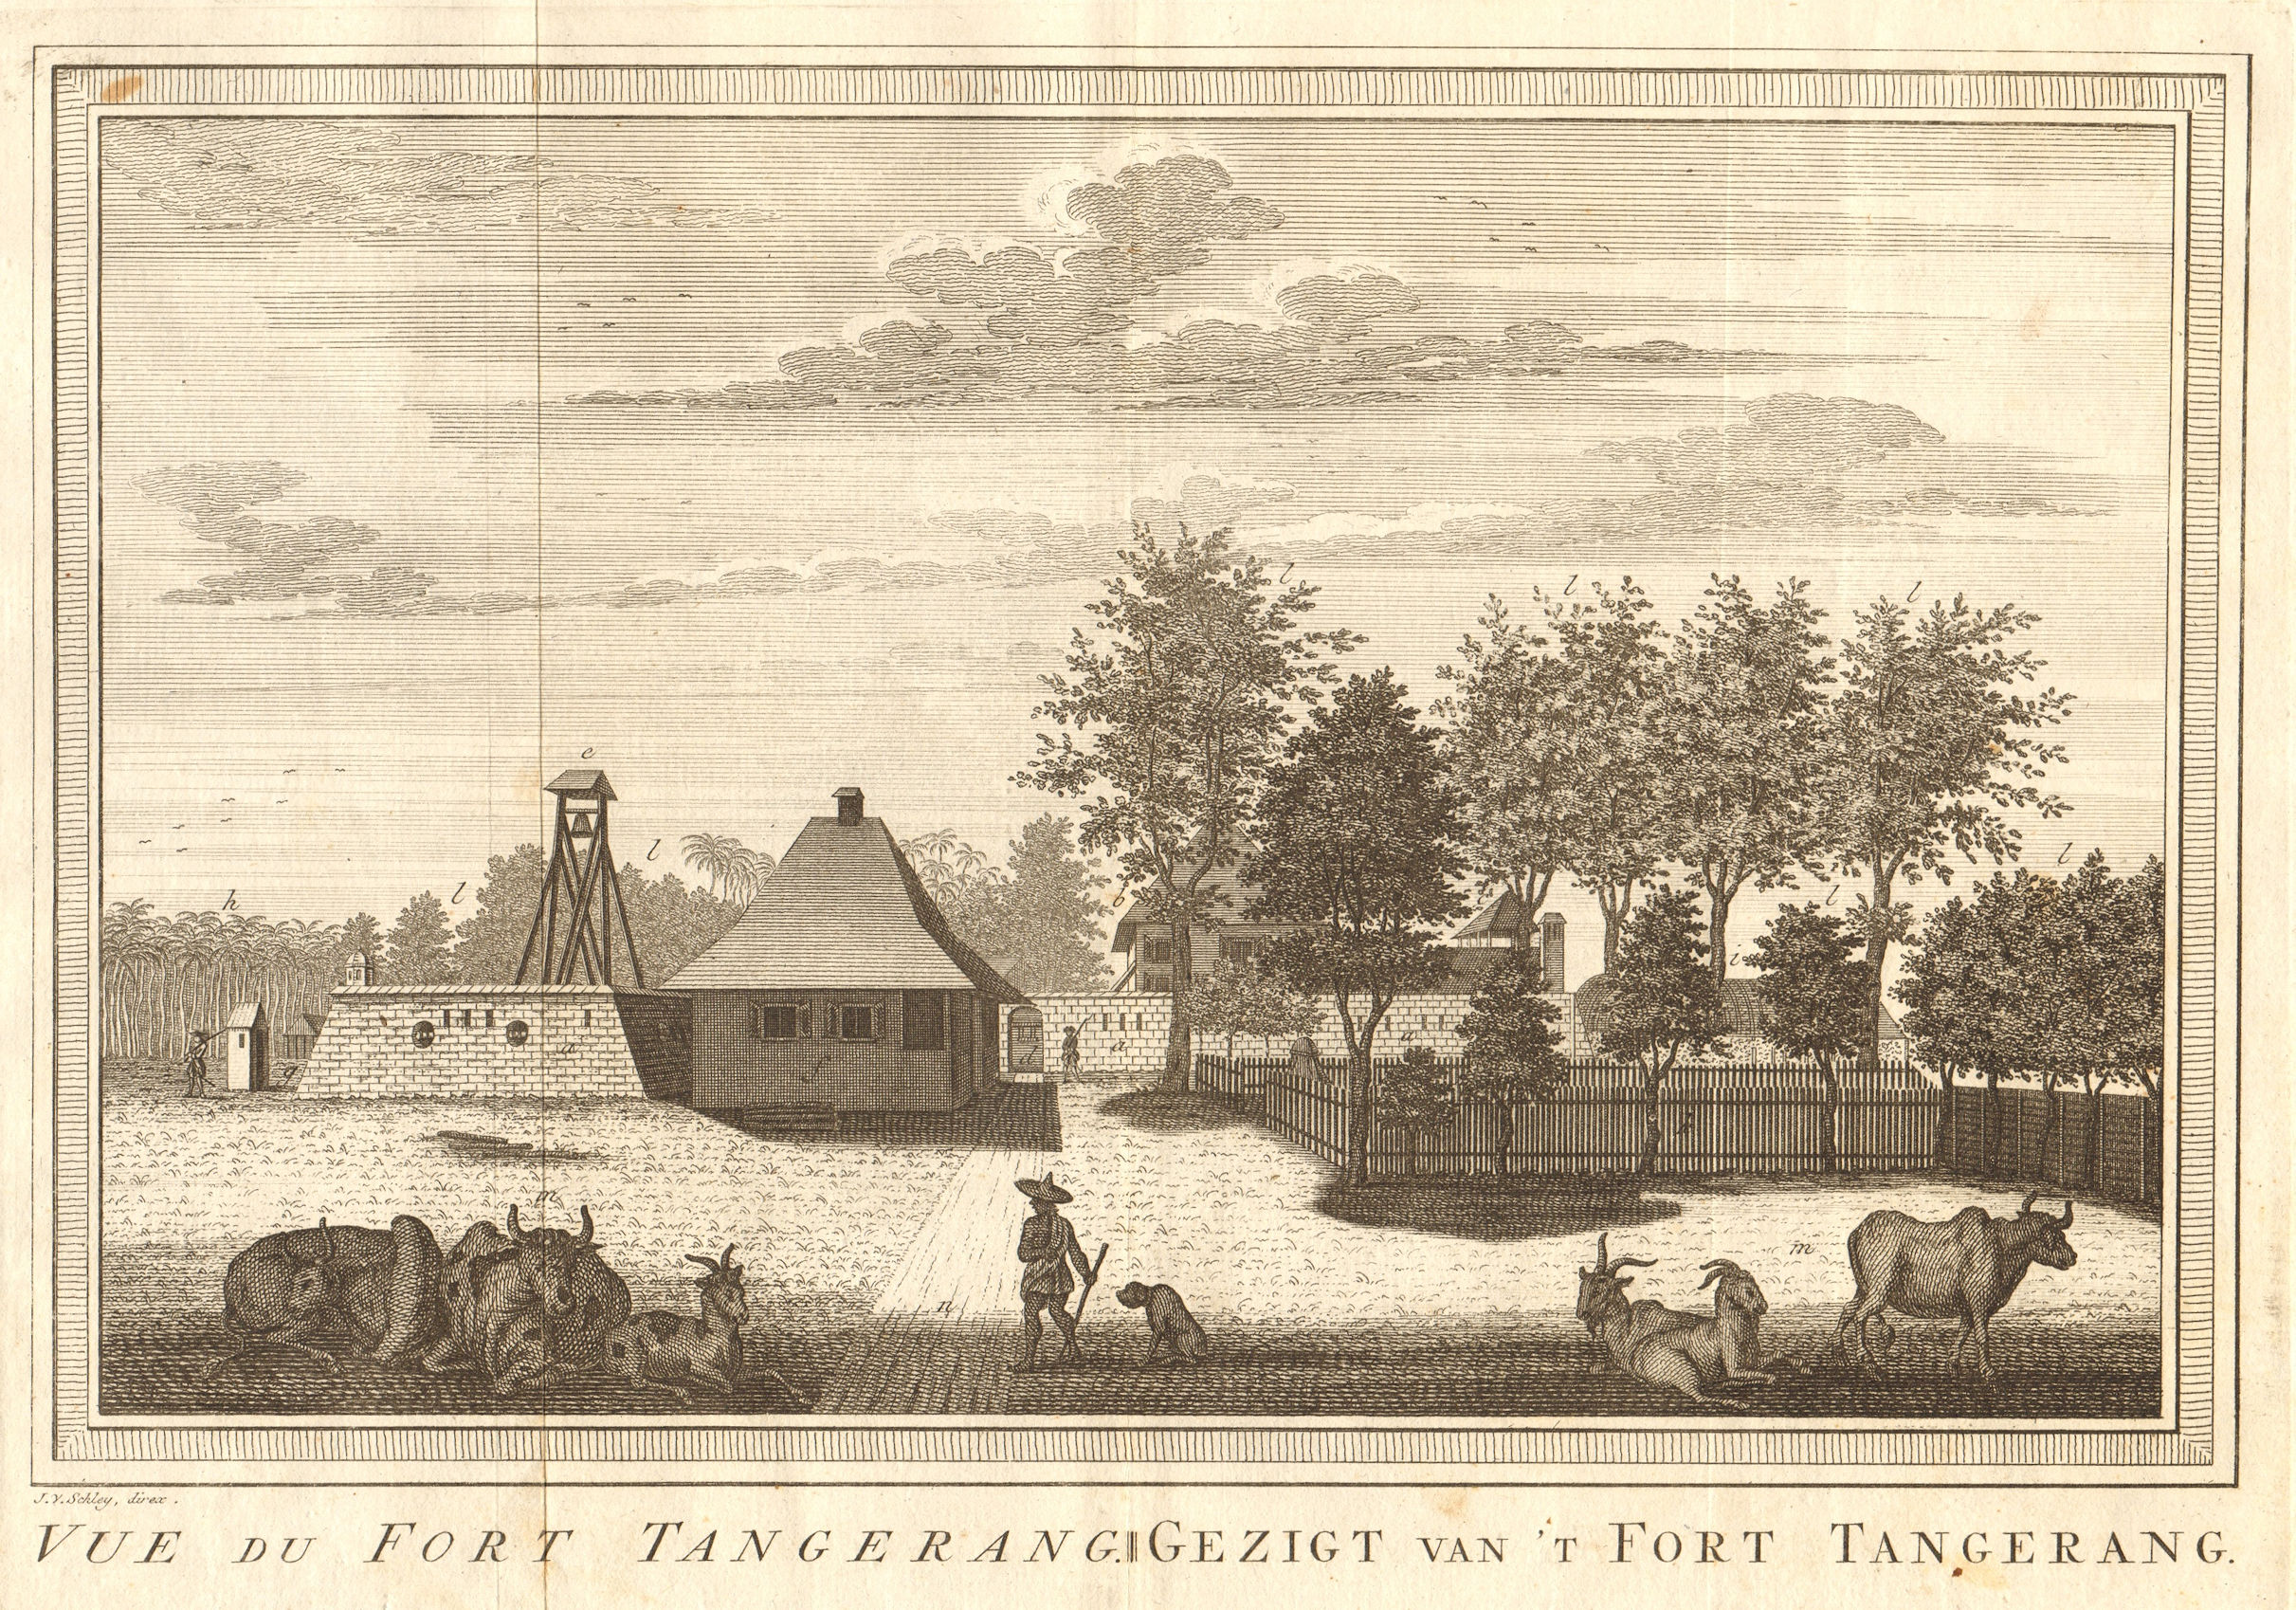 Associate Product 'Vue du Fort Tangerang', Batavia, Dutch East Indies. Jakarta. SCHLEY 1763